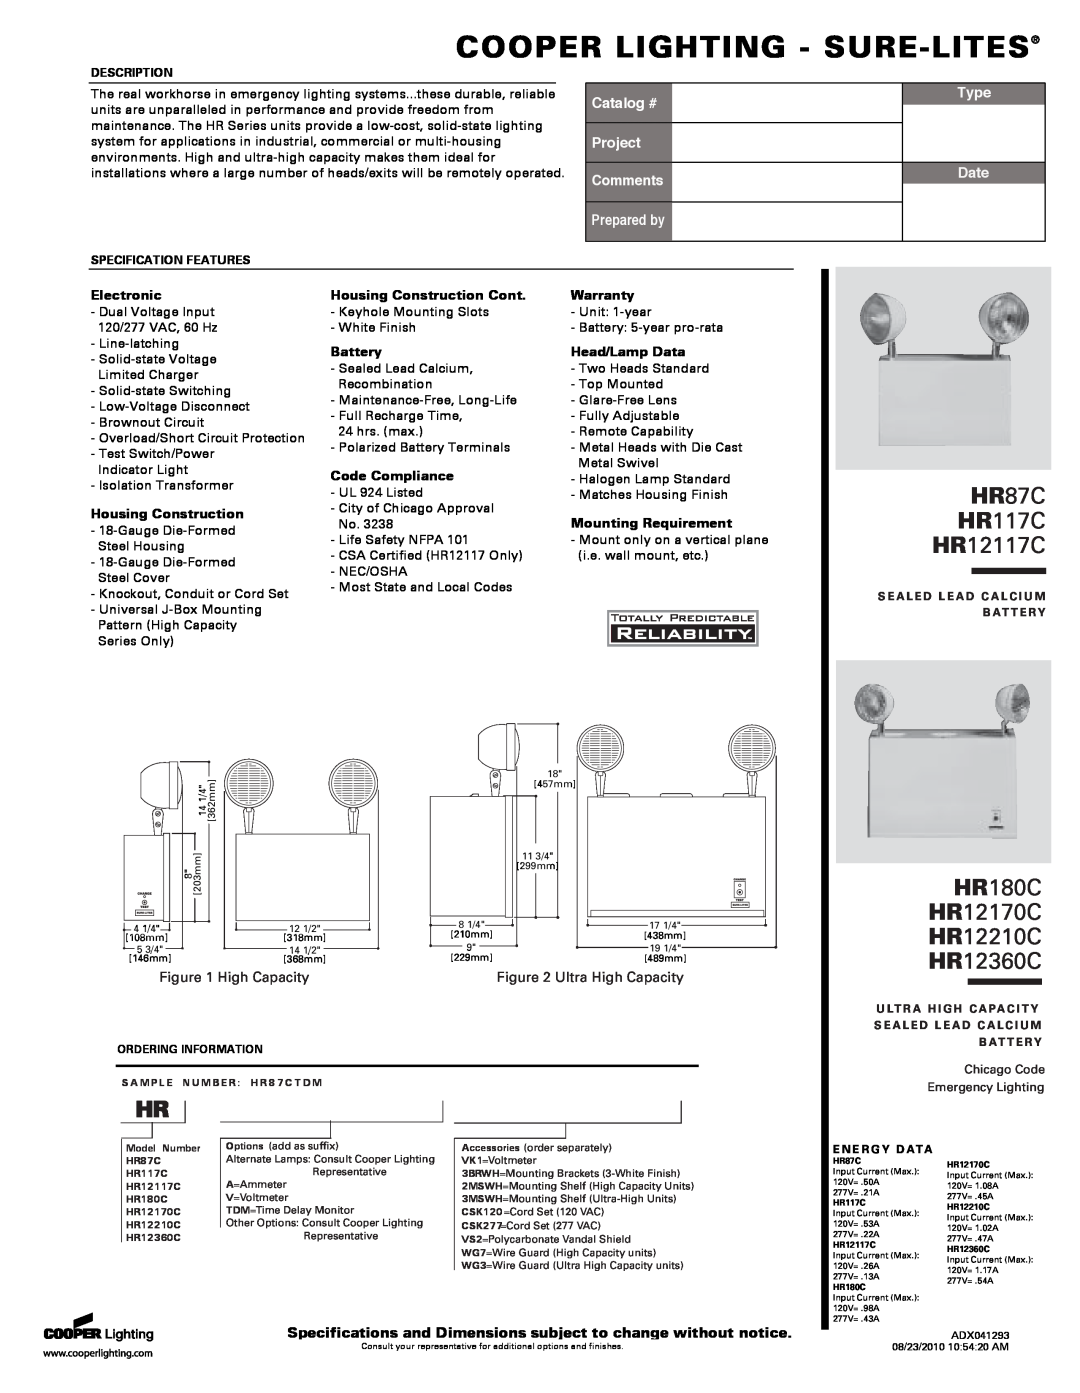 Cooper Lighting specifications Cooper Lighting - Sure-Lites, HR87C HR117C HR12117C, HR180C HR12170C HR12210C HR12360C 